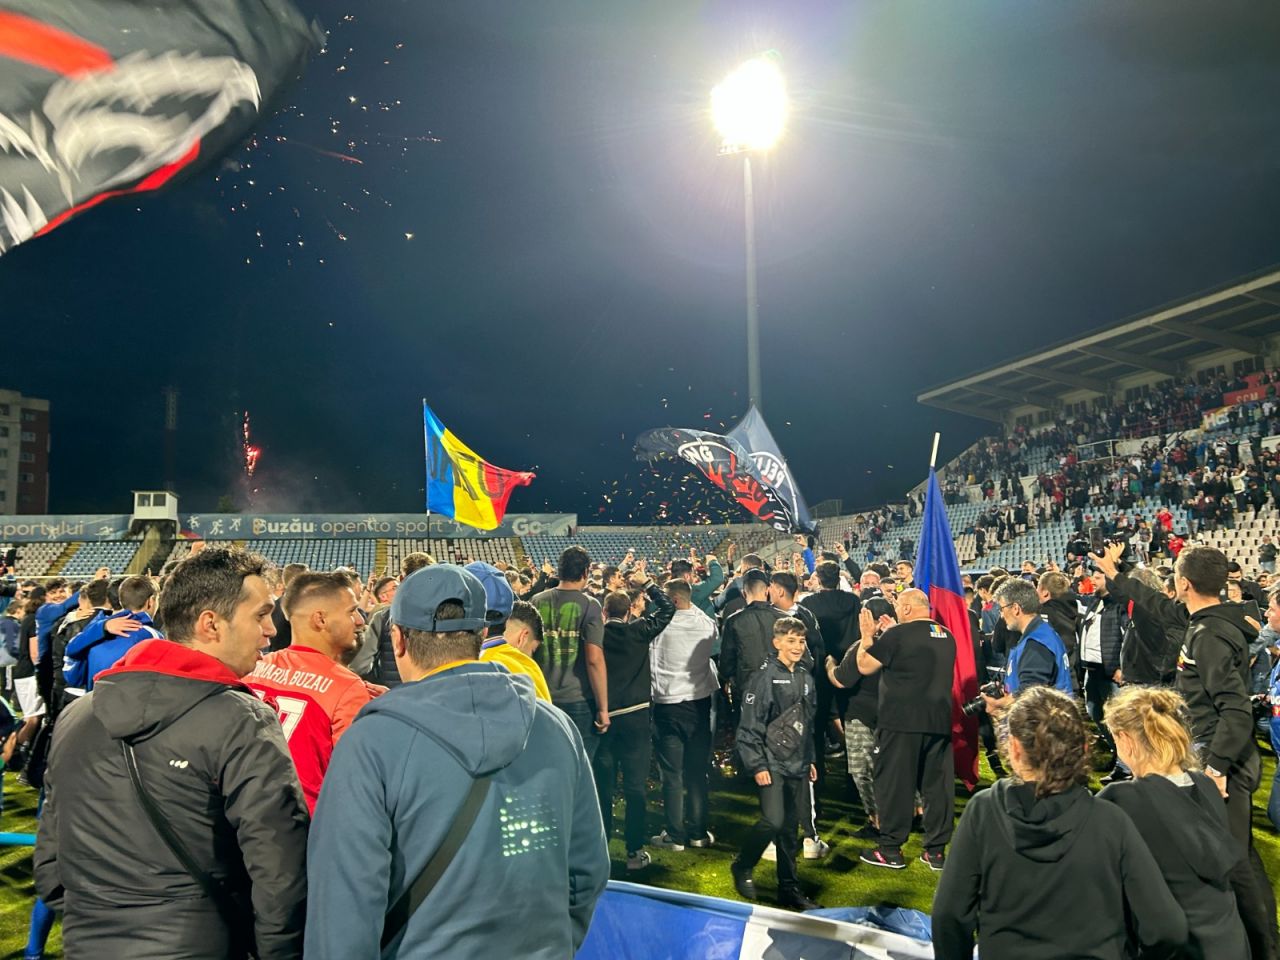 Sărbătoare la Buzău! Fotbaliștii s-au bucurat alături de fani în urma promovării istorice. Vali Dumitrache: ”Am muncit un an pentru asta”_14